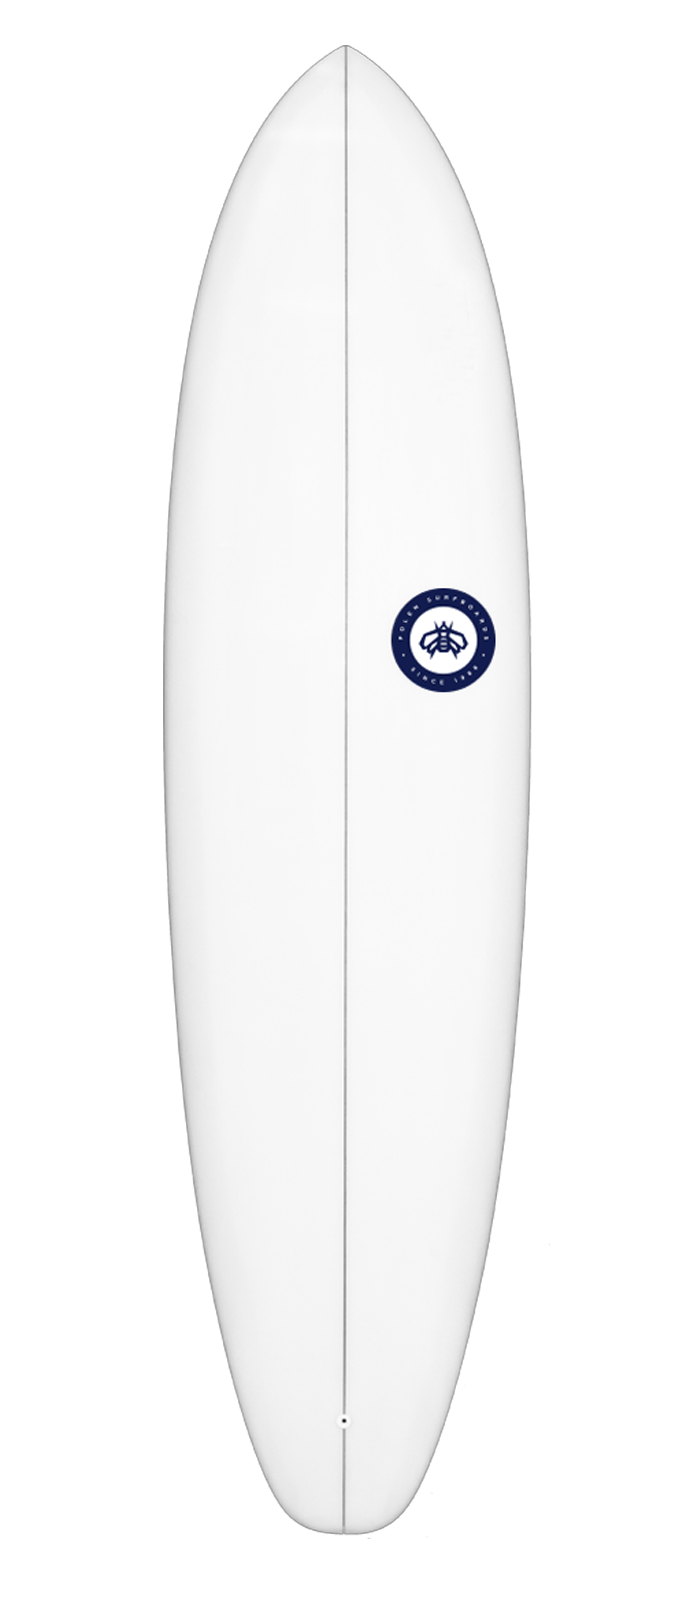 REBEL GRACE surfboard model deck